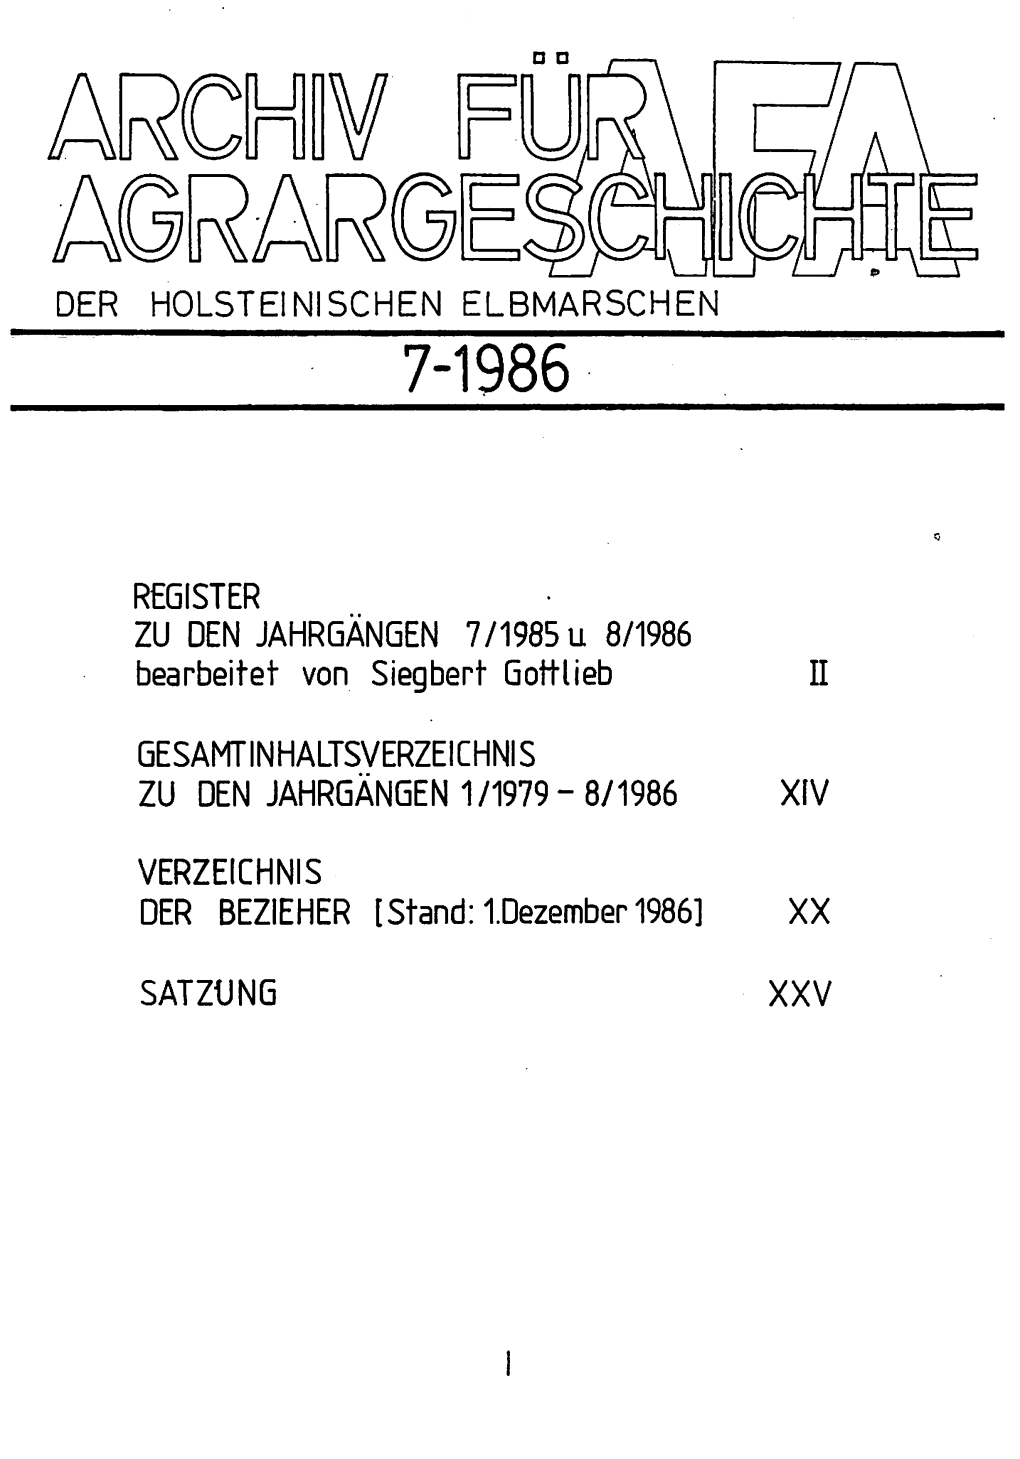 ZU DEN JAHRGÄNGEN 7/1985U 8/1986 Bearbeitet Von Siegbert